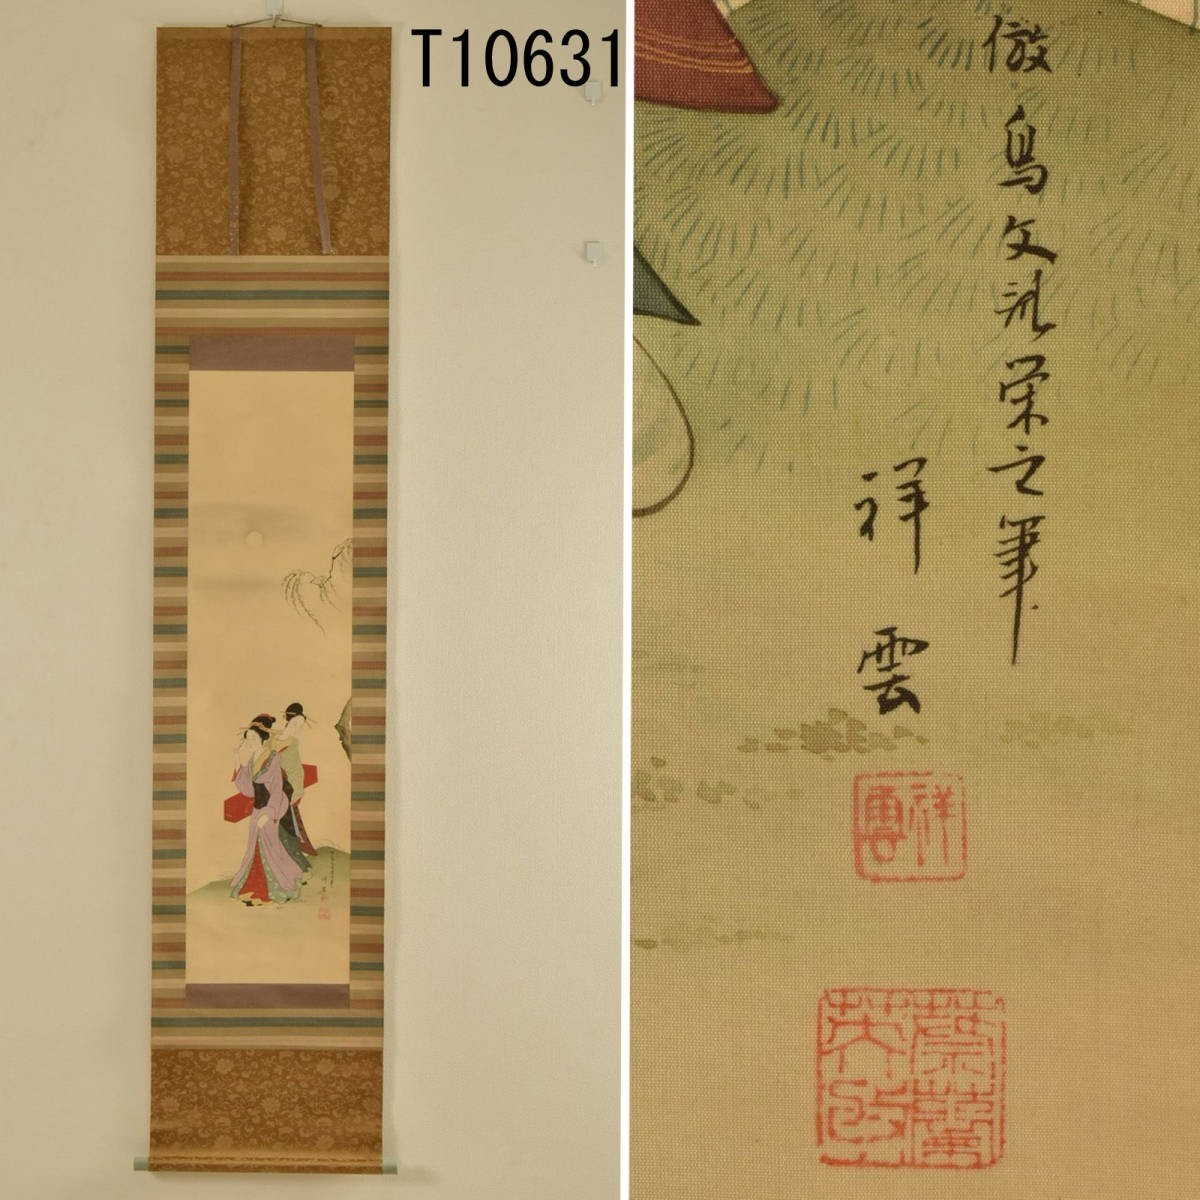 T10631 Shoun : Parchemin suspendu belle femme : authentique, Peinture, Peinture japonaise, personne, Bodhisattva